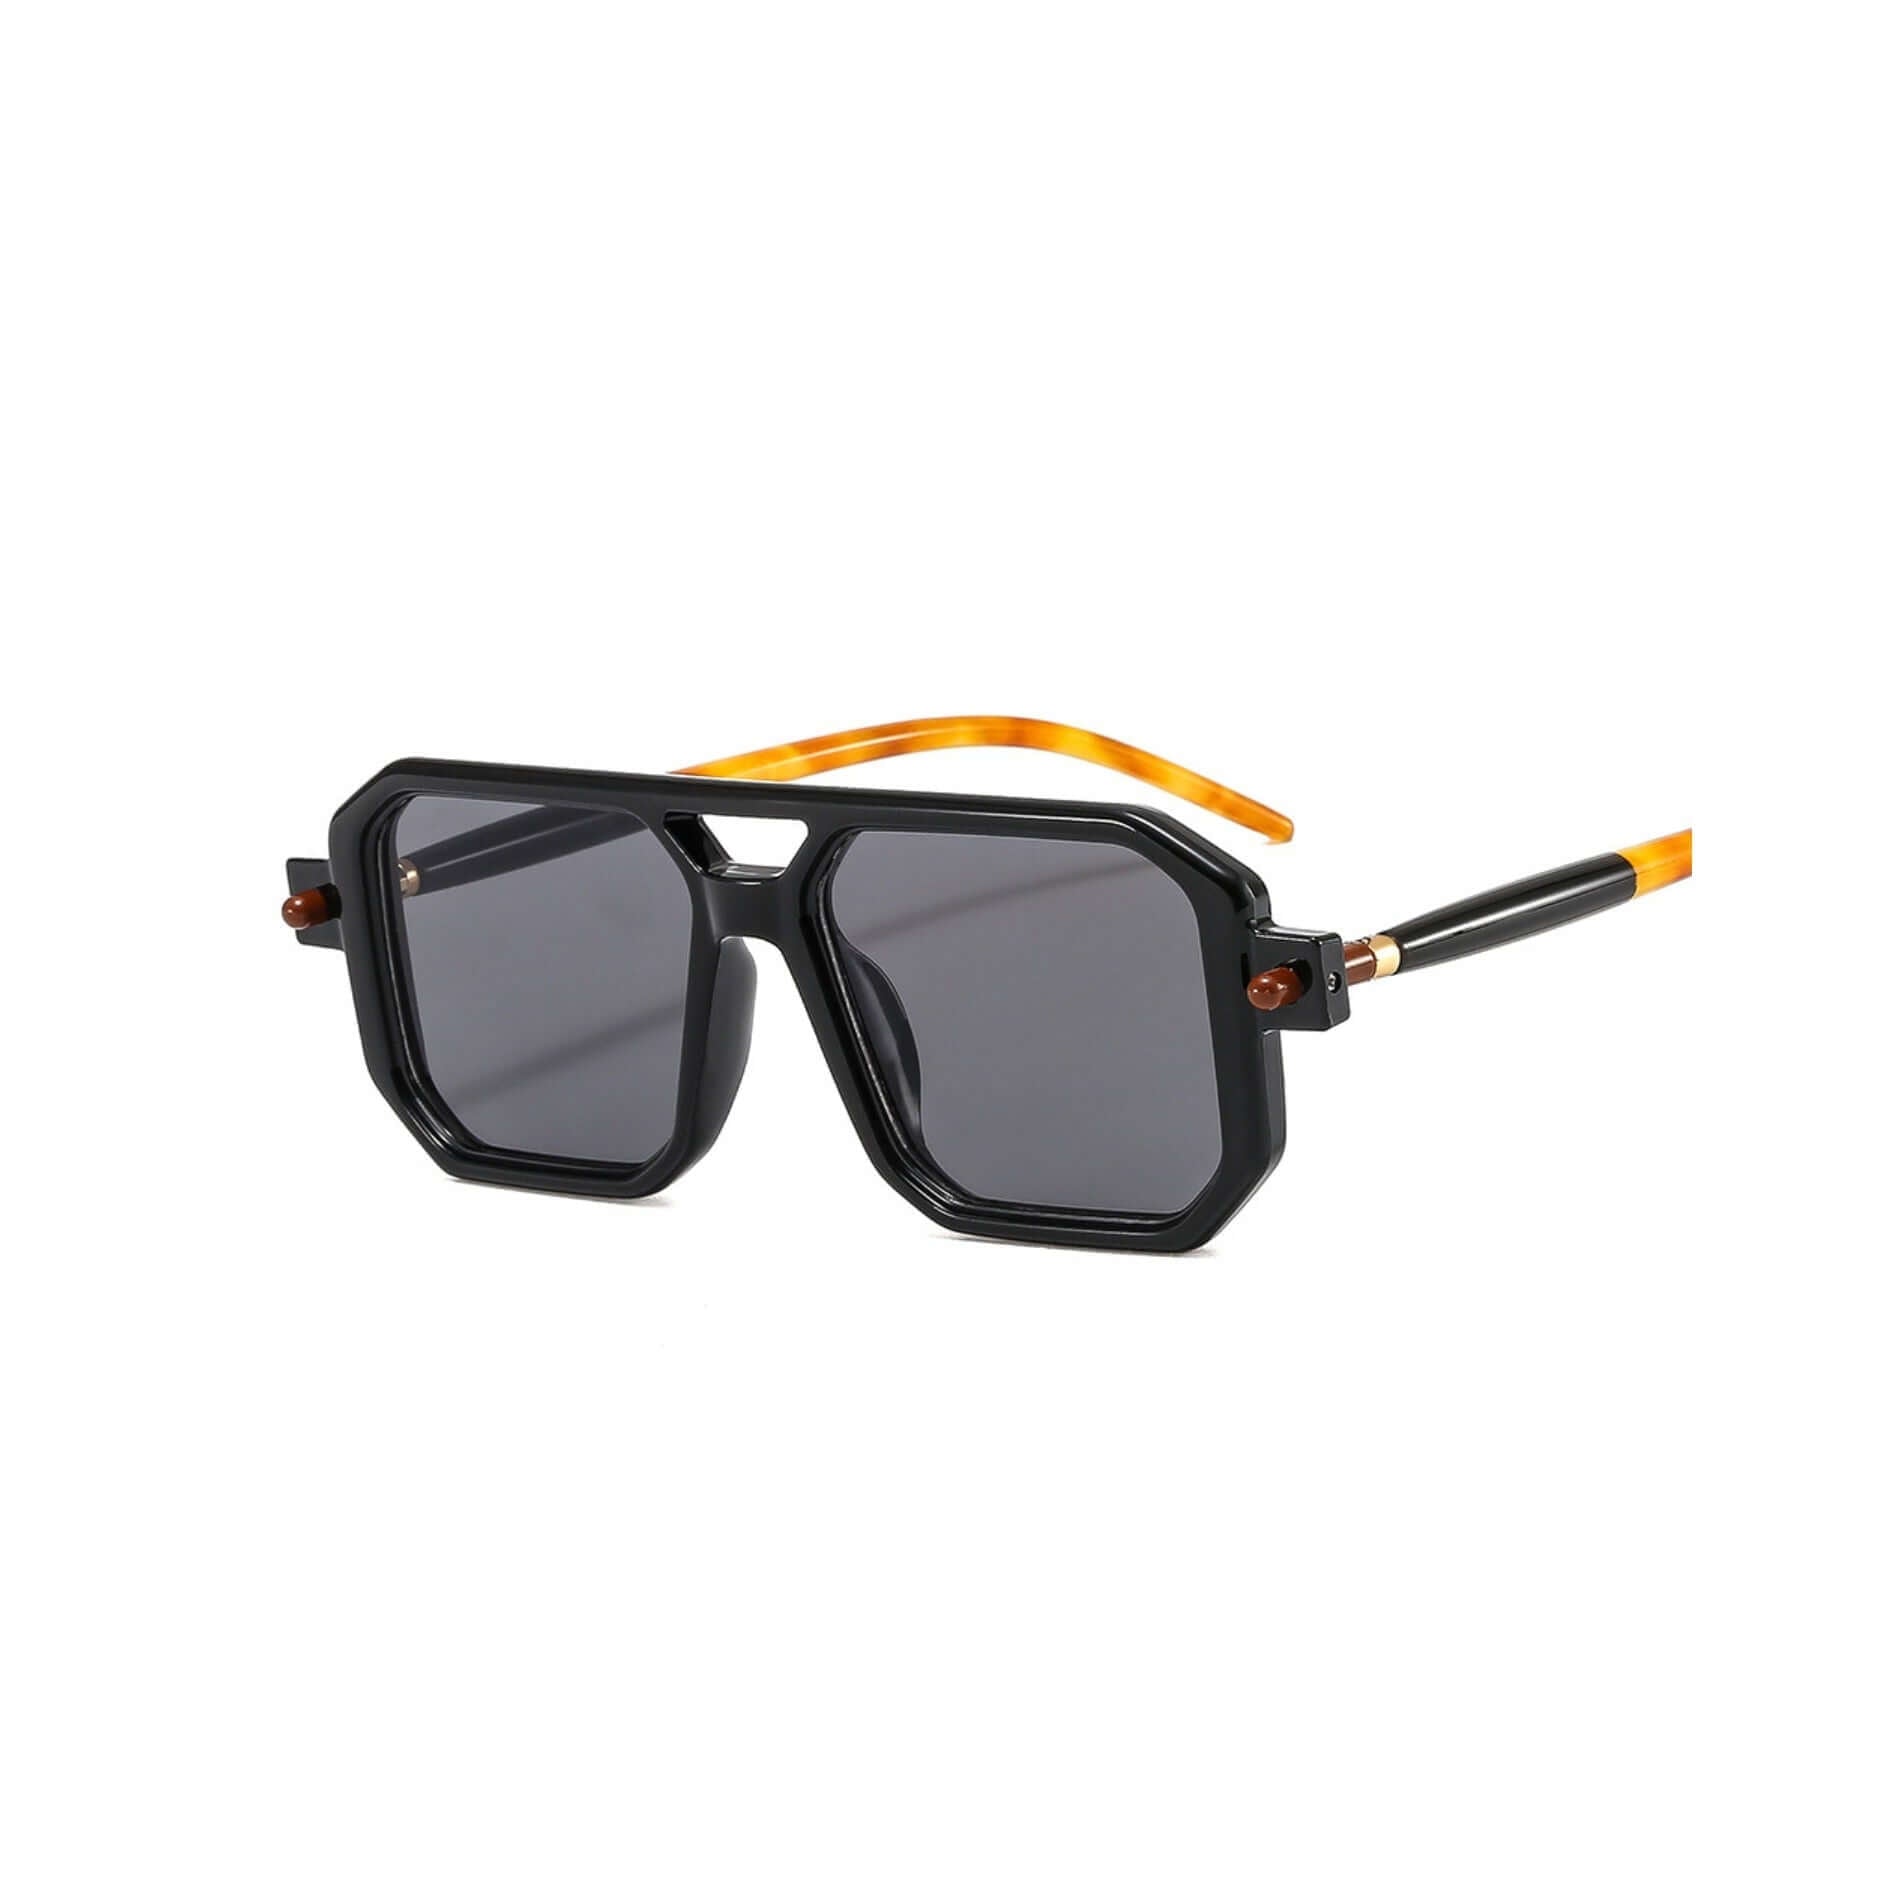 Charlotte Aviator Sunglasses UV400 Protection I Dansk Copenhagen